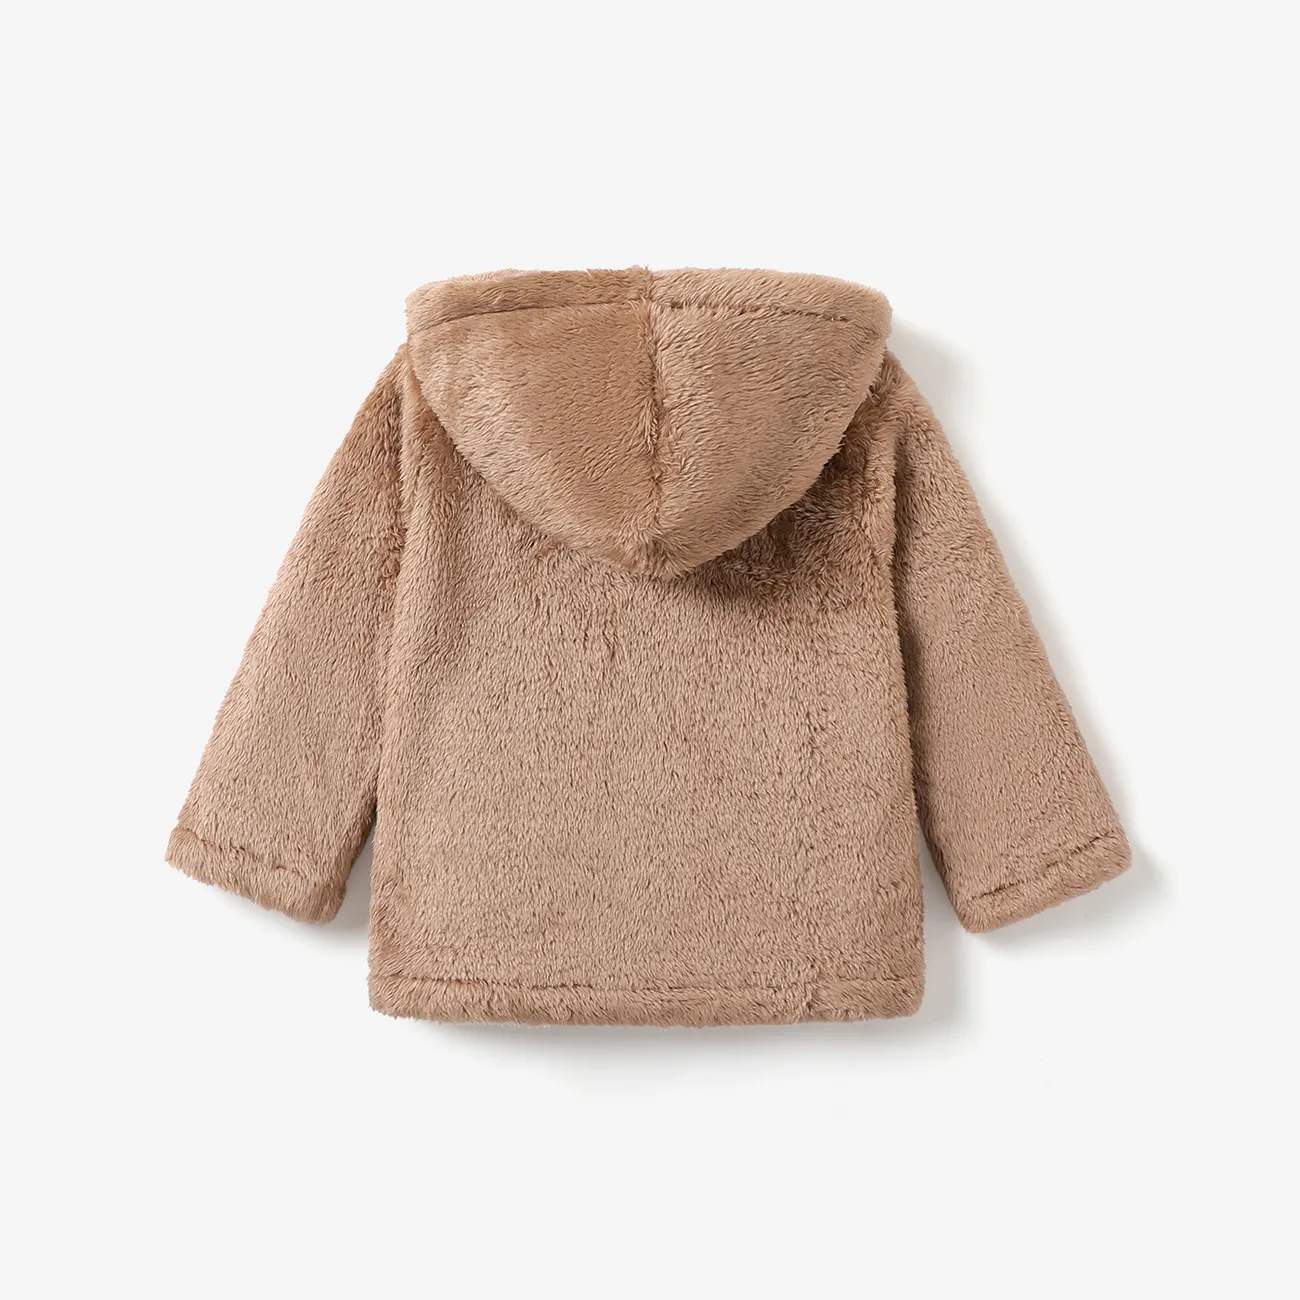 Toddler Girl/Boy Basic Solid Color Polar Fleece Hooded Coat Brown big image 1